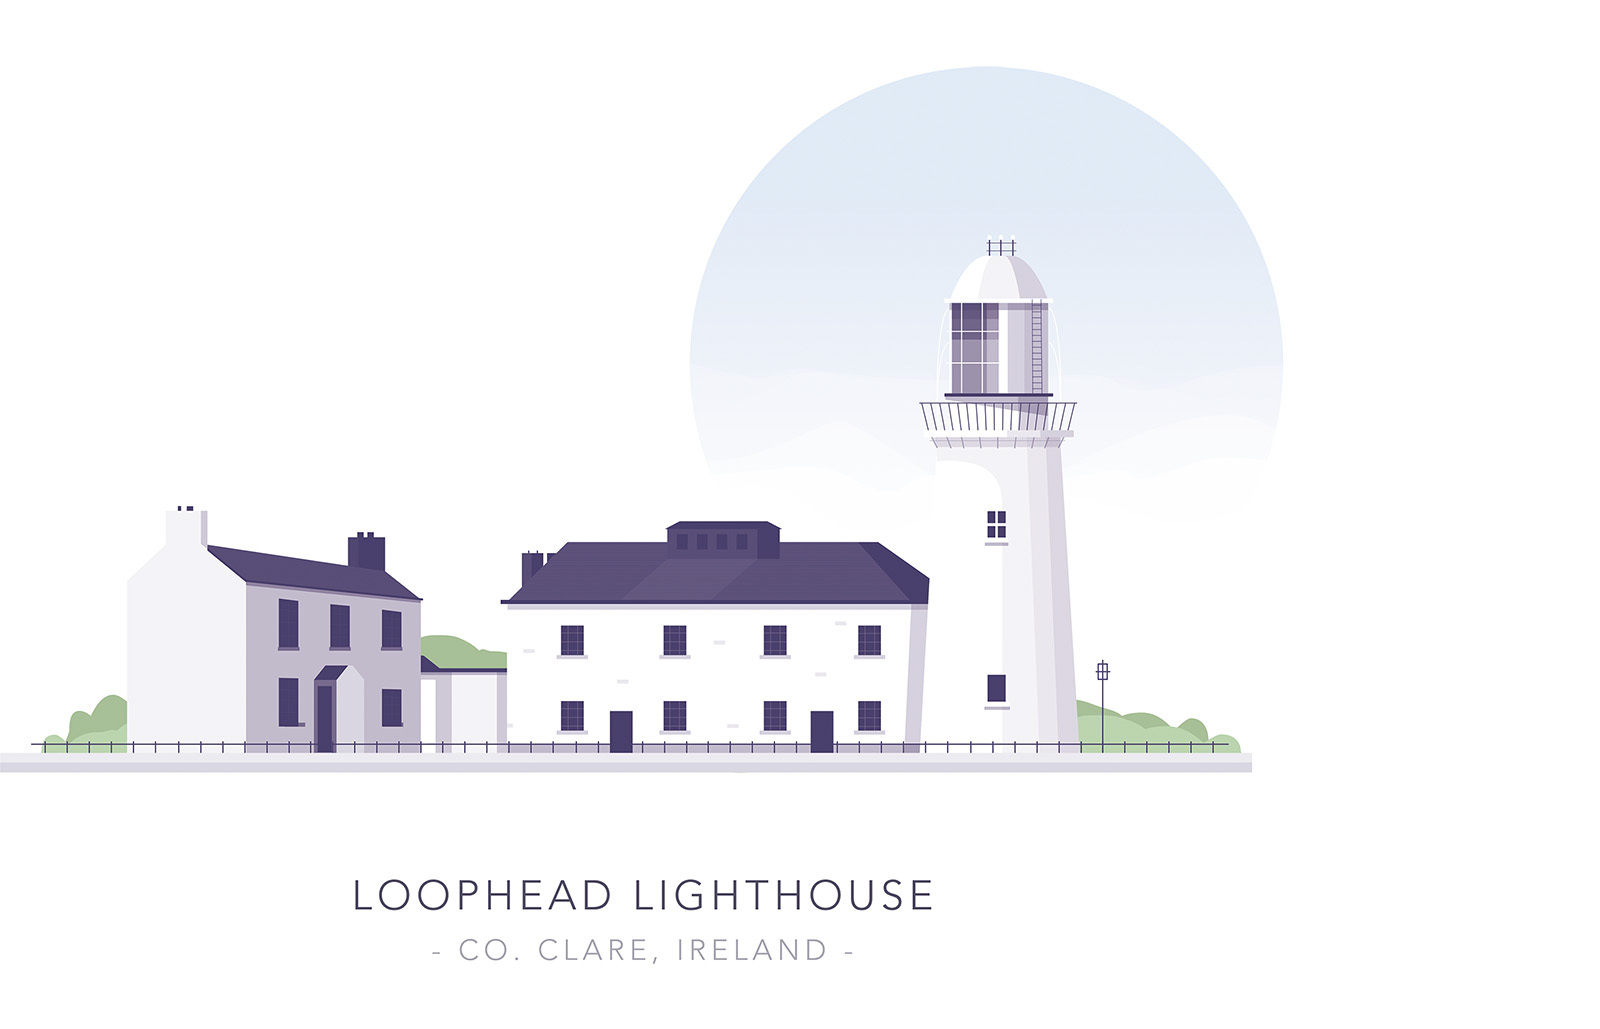 Loophead Lighthouse